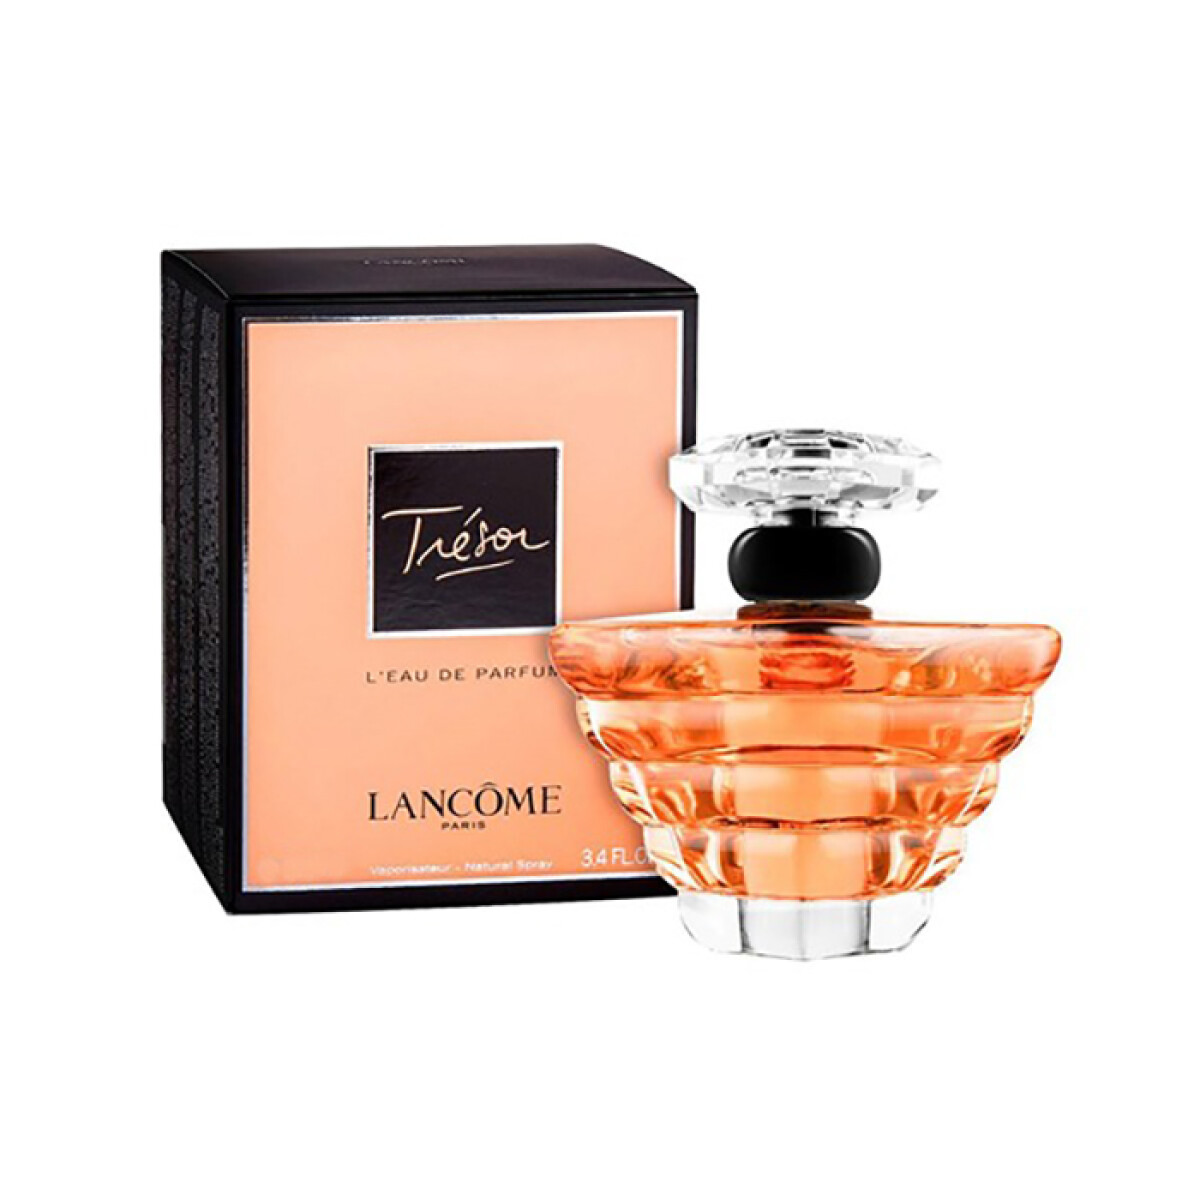 Trésor L´eau de parfum Lancome - 50 ml 